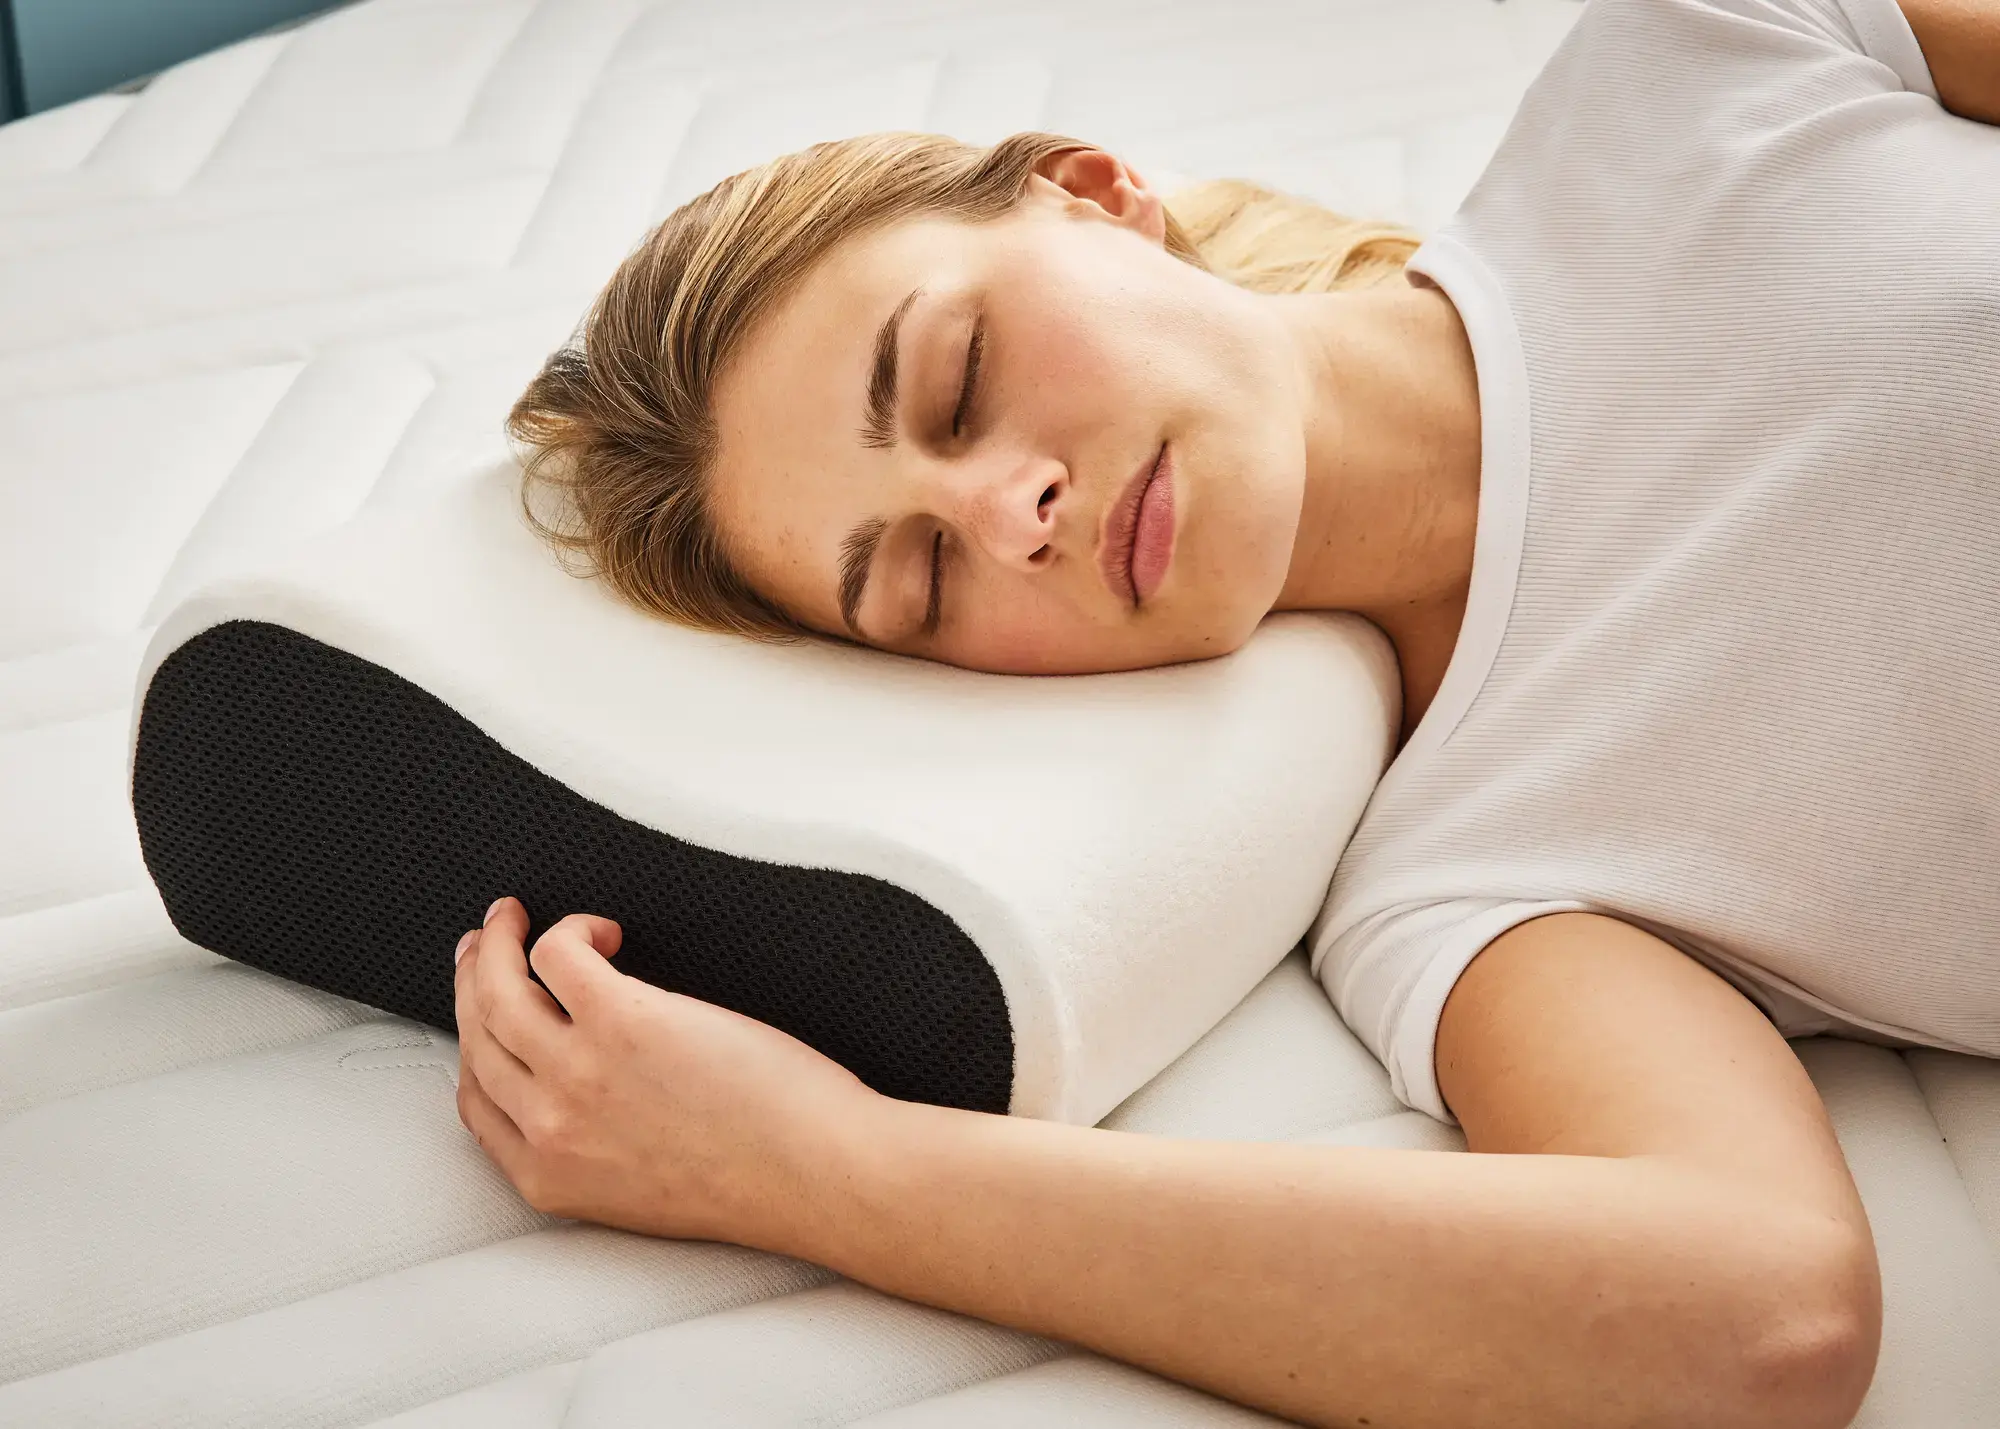 Oreillers : personnalisez le confort de votre lit - Bultex